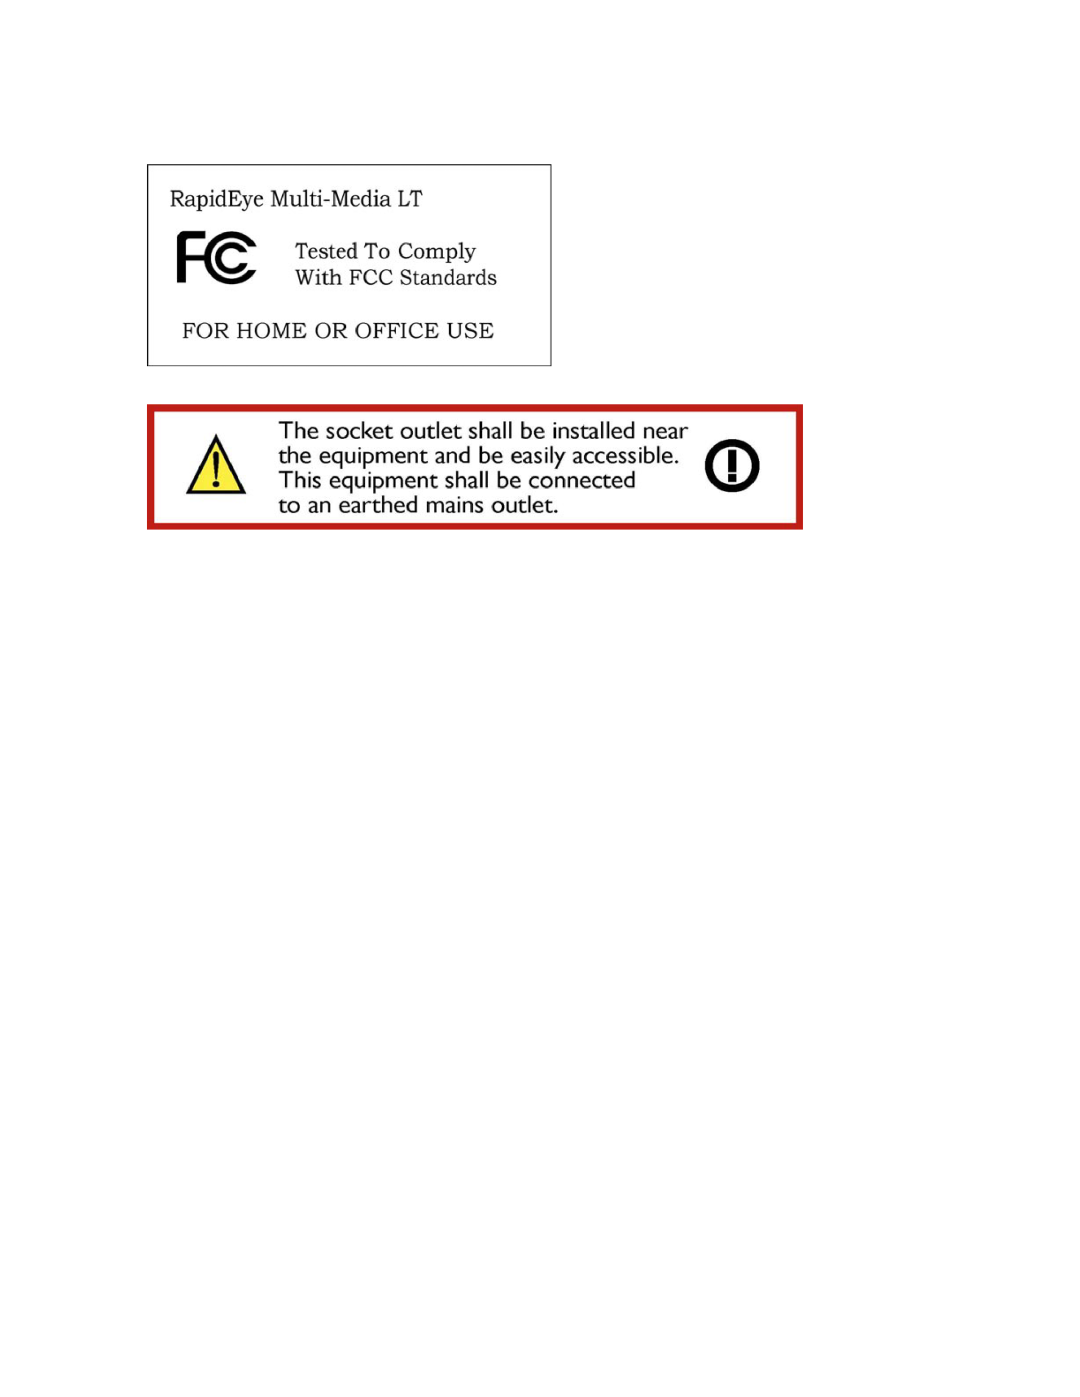 Honeywell K9696V2 installation instructions 